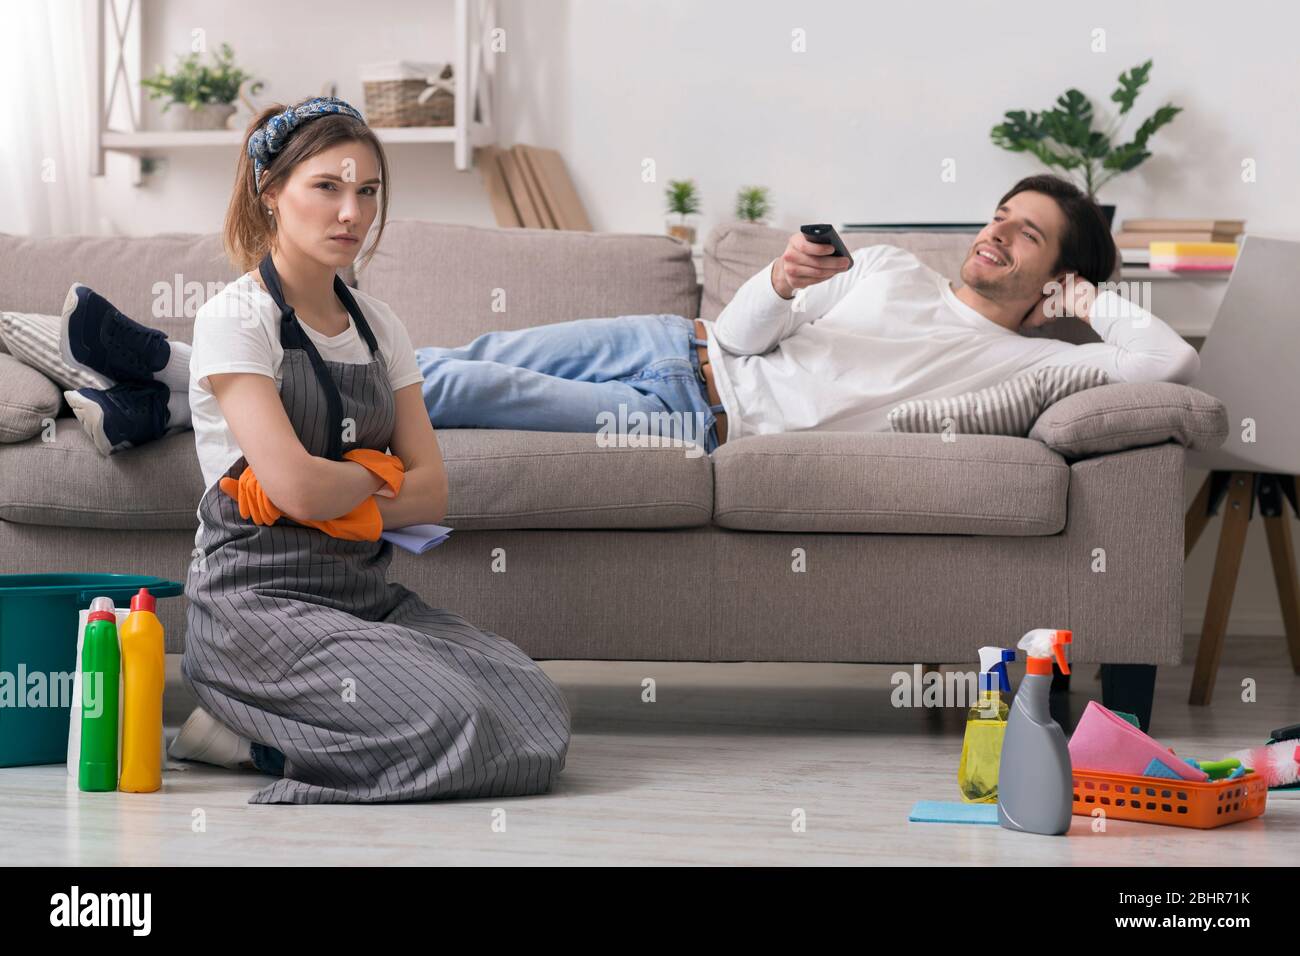 Tareas domésticas. Mujer ofendida cansada después de la limpieza sentada junto a un marido perezoso Foto de stock